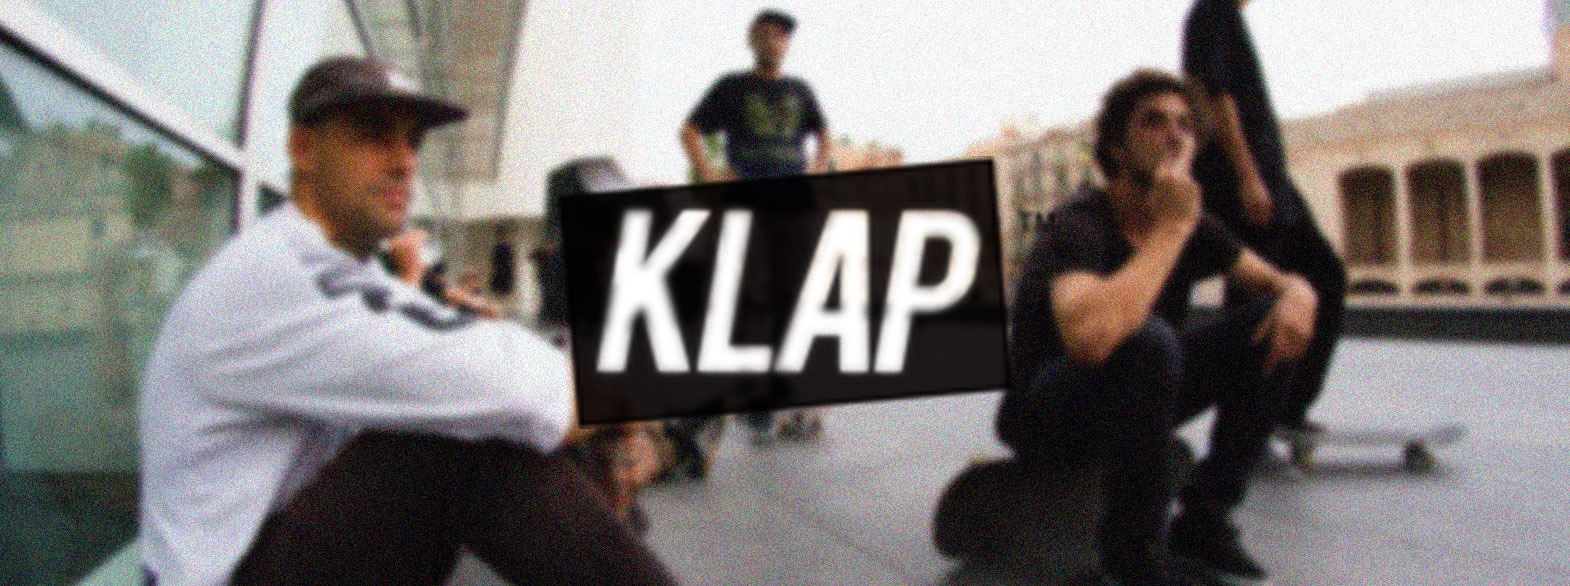 Klap_party